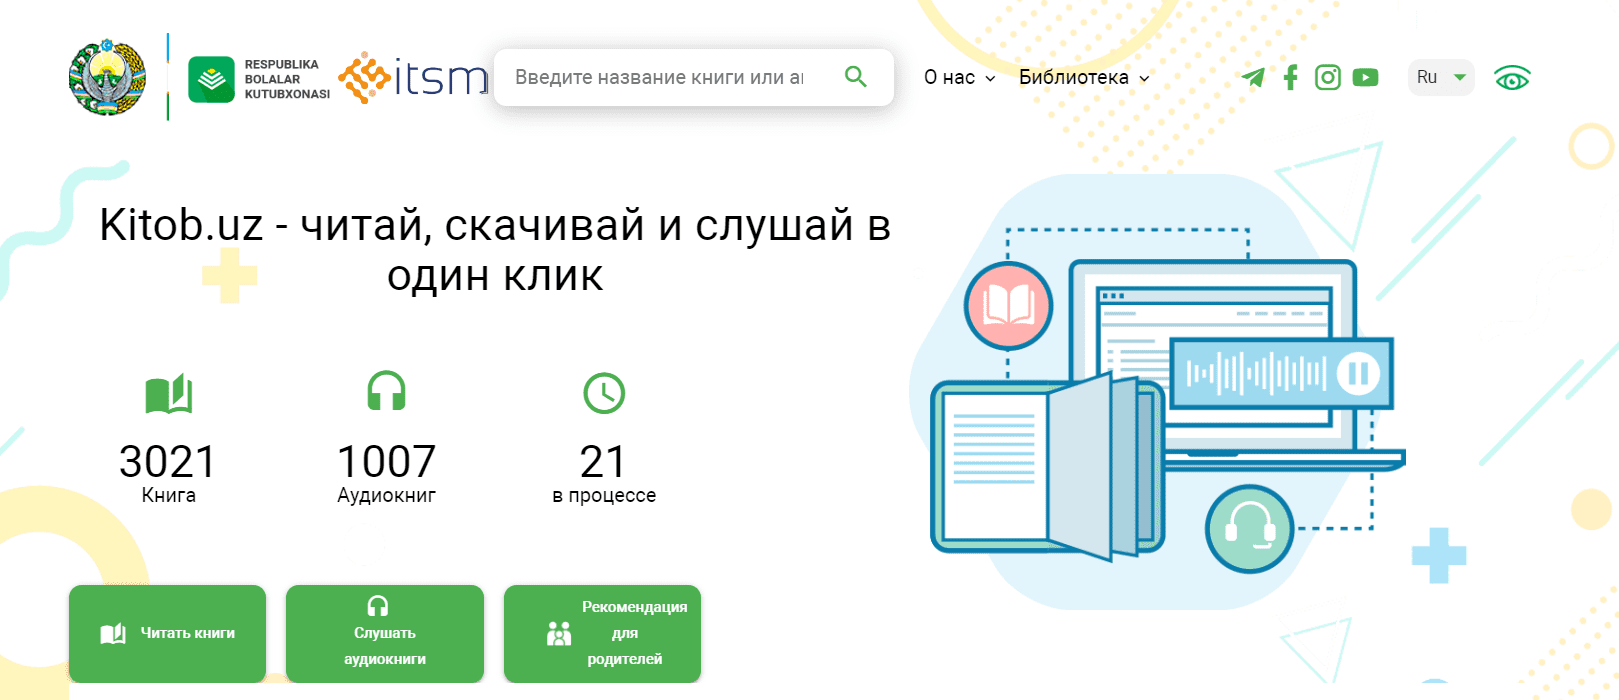 Государственная детская библиотека Республики Узбекистана (Kitob.uz) – официальный сайт, мобильное приложение